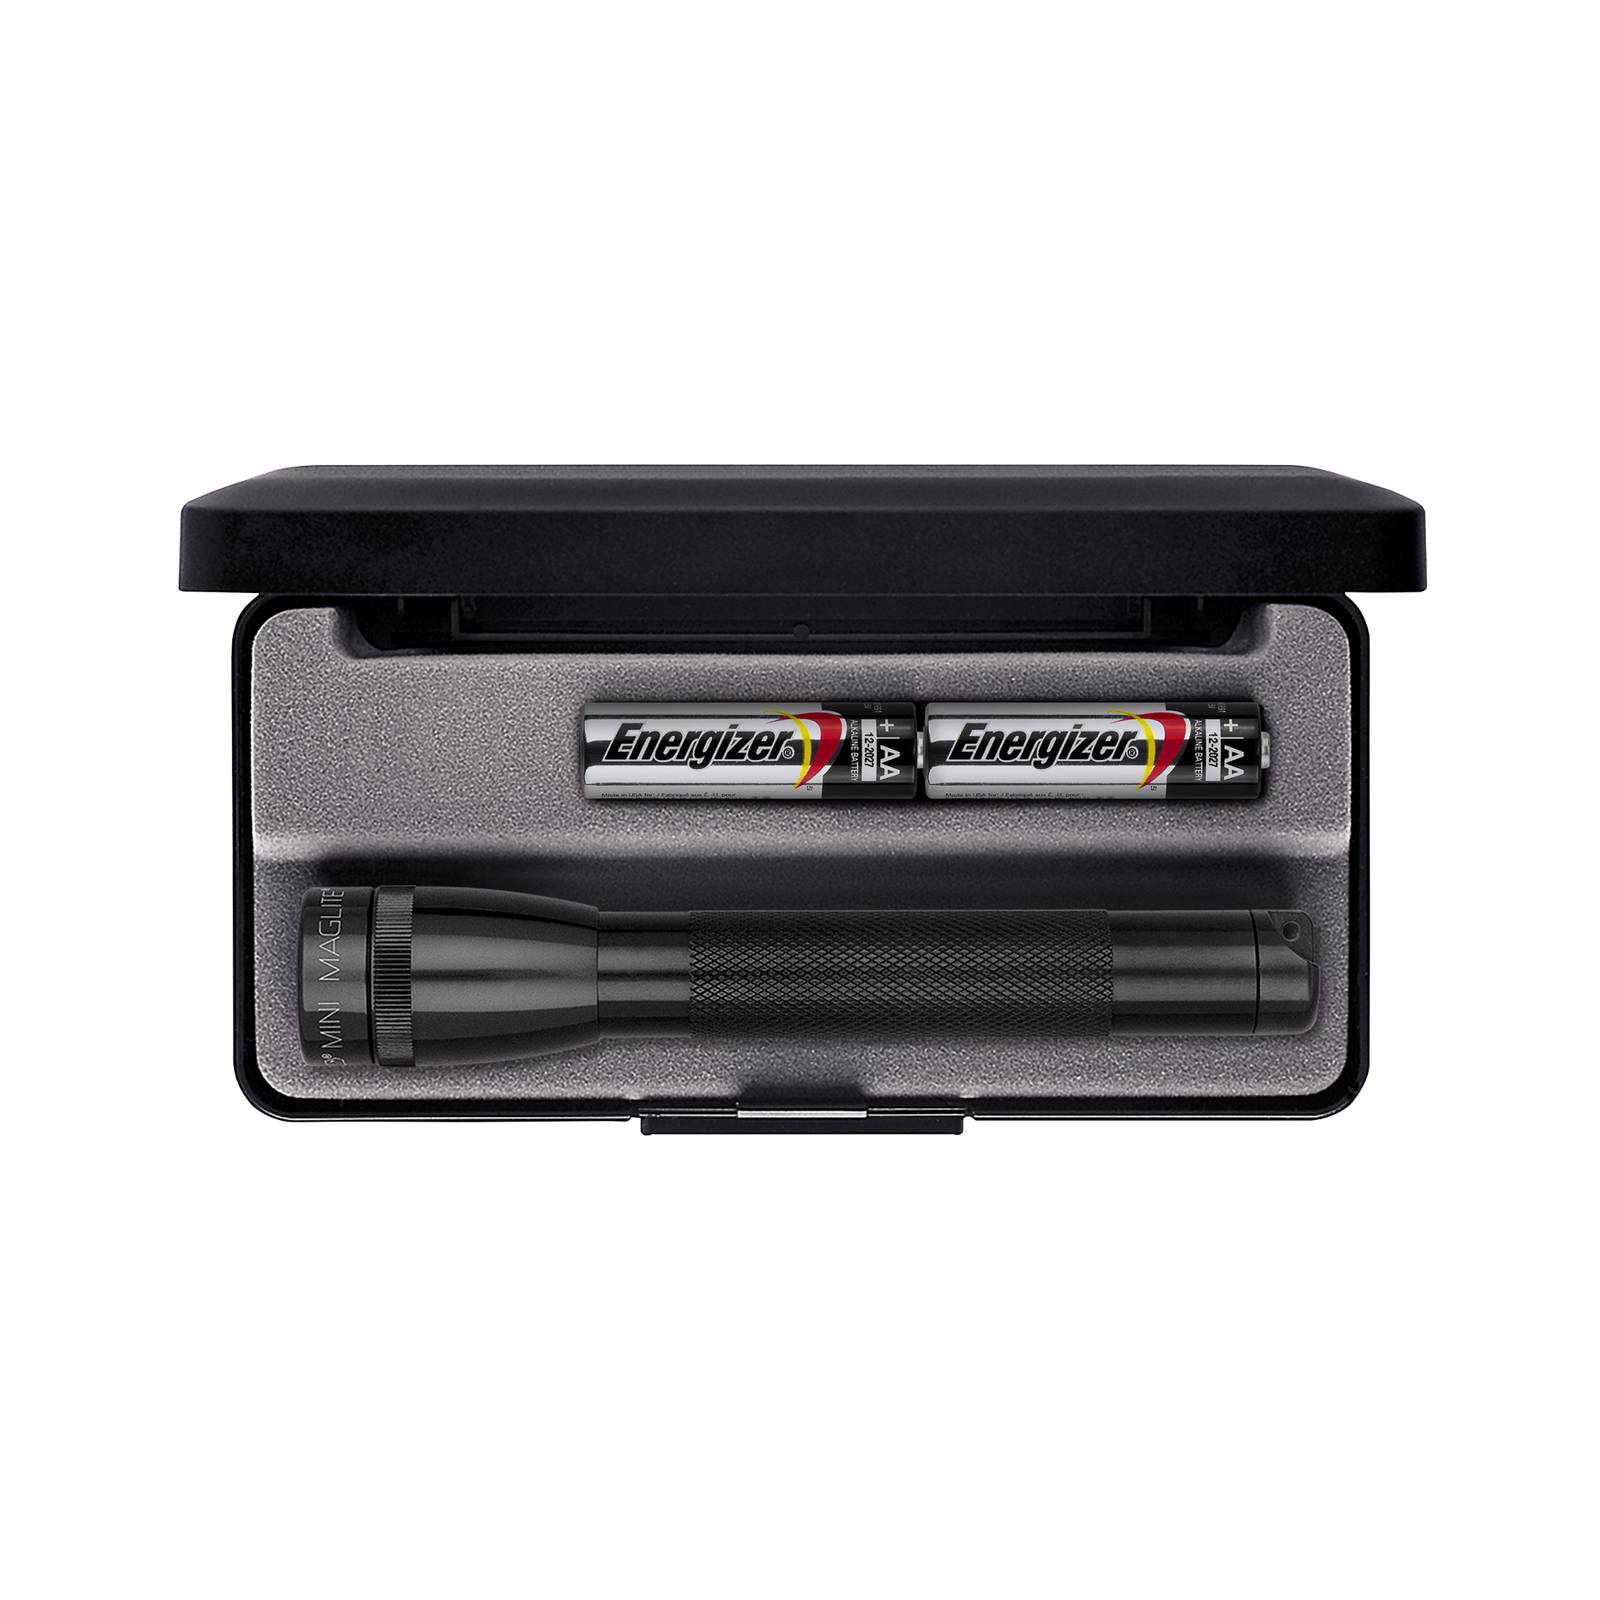 Maglite Xenon-Taschenlampe Mini, 2-Cell AA, mit Box, schwarz günstig online kaufen